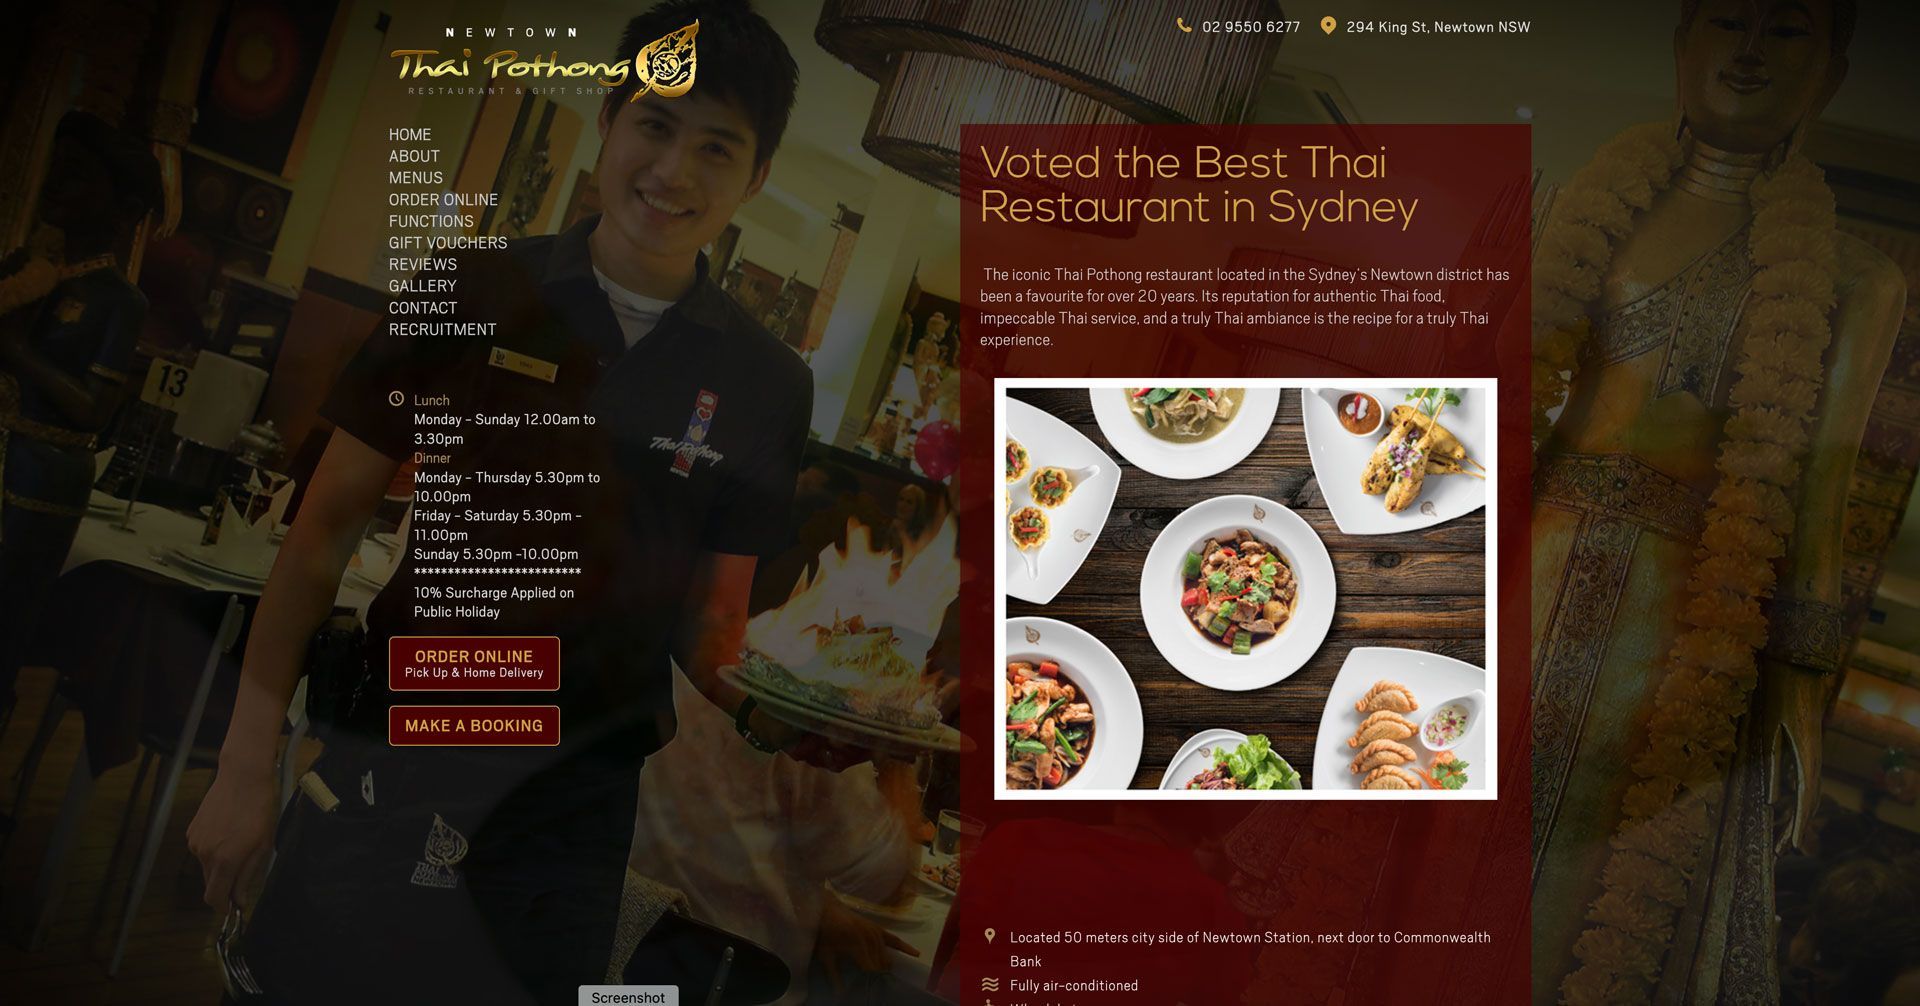 Website design & Restaurant Online Ordering system for Thai Pothong restaurant Sydney